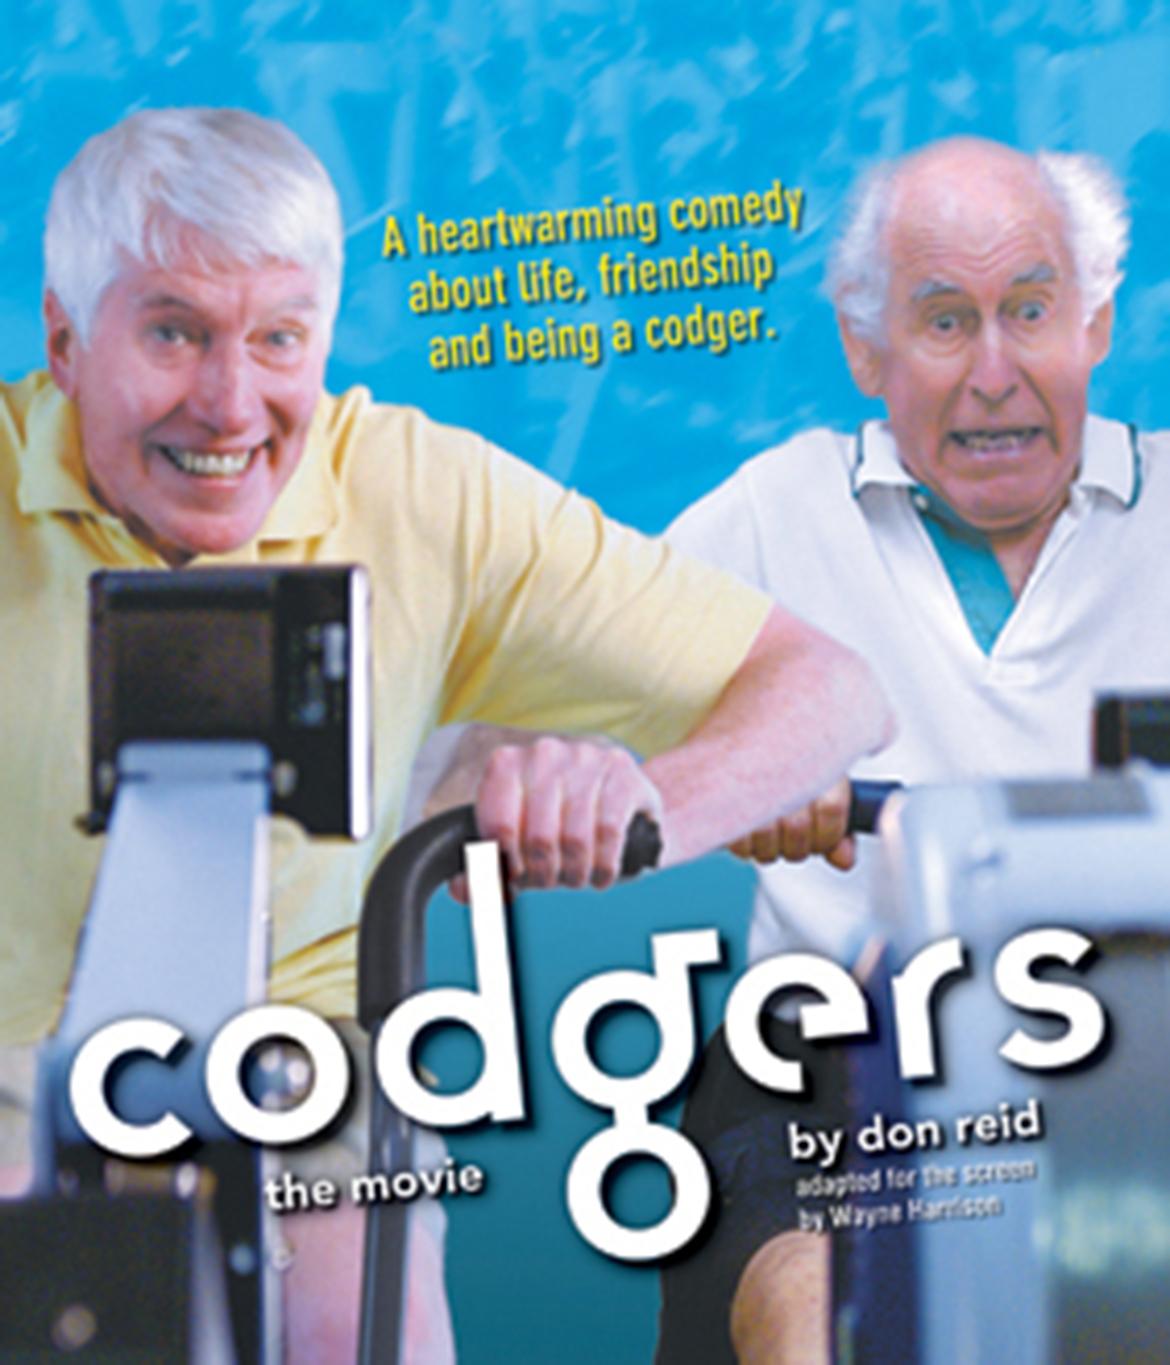 Codgers: the movie